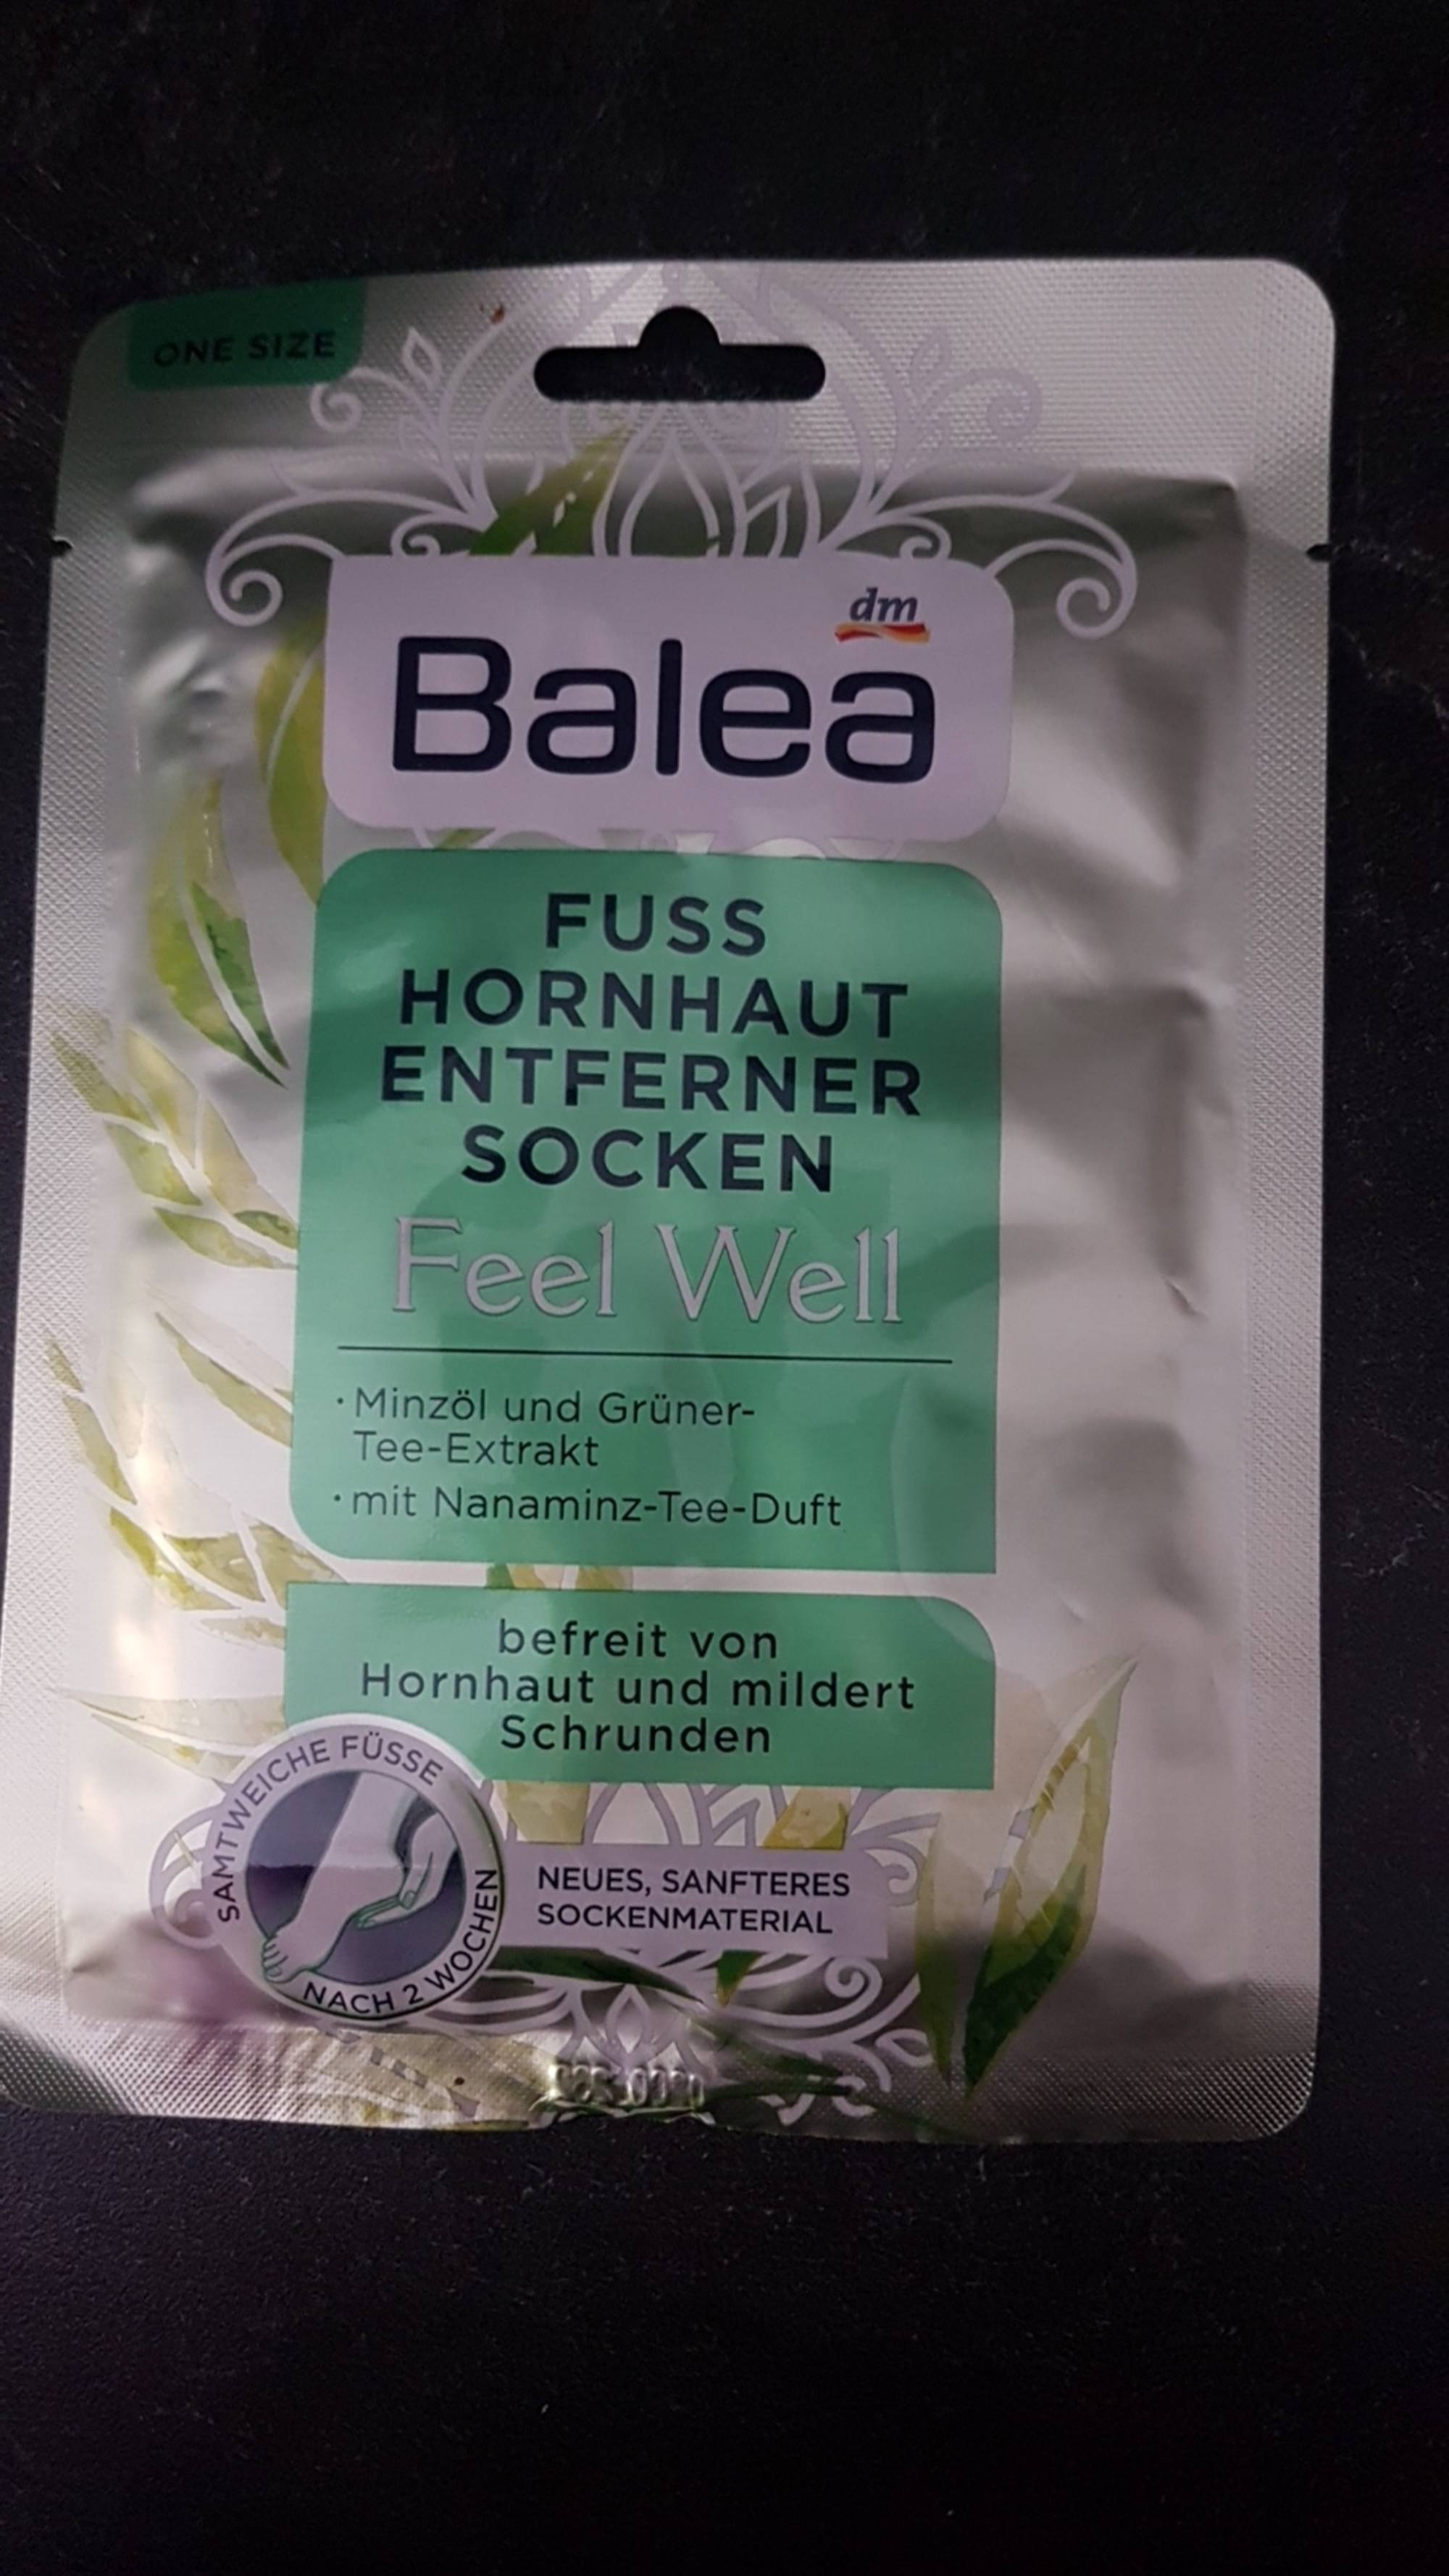 BALEA - Feel well - Fuss hornhaut entferner socken 